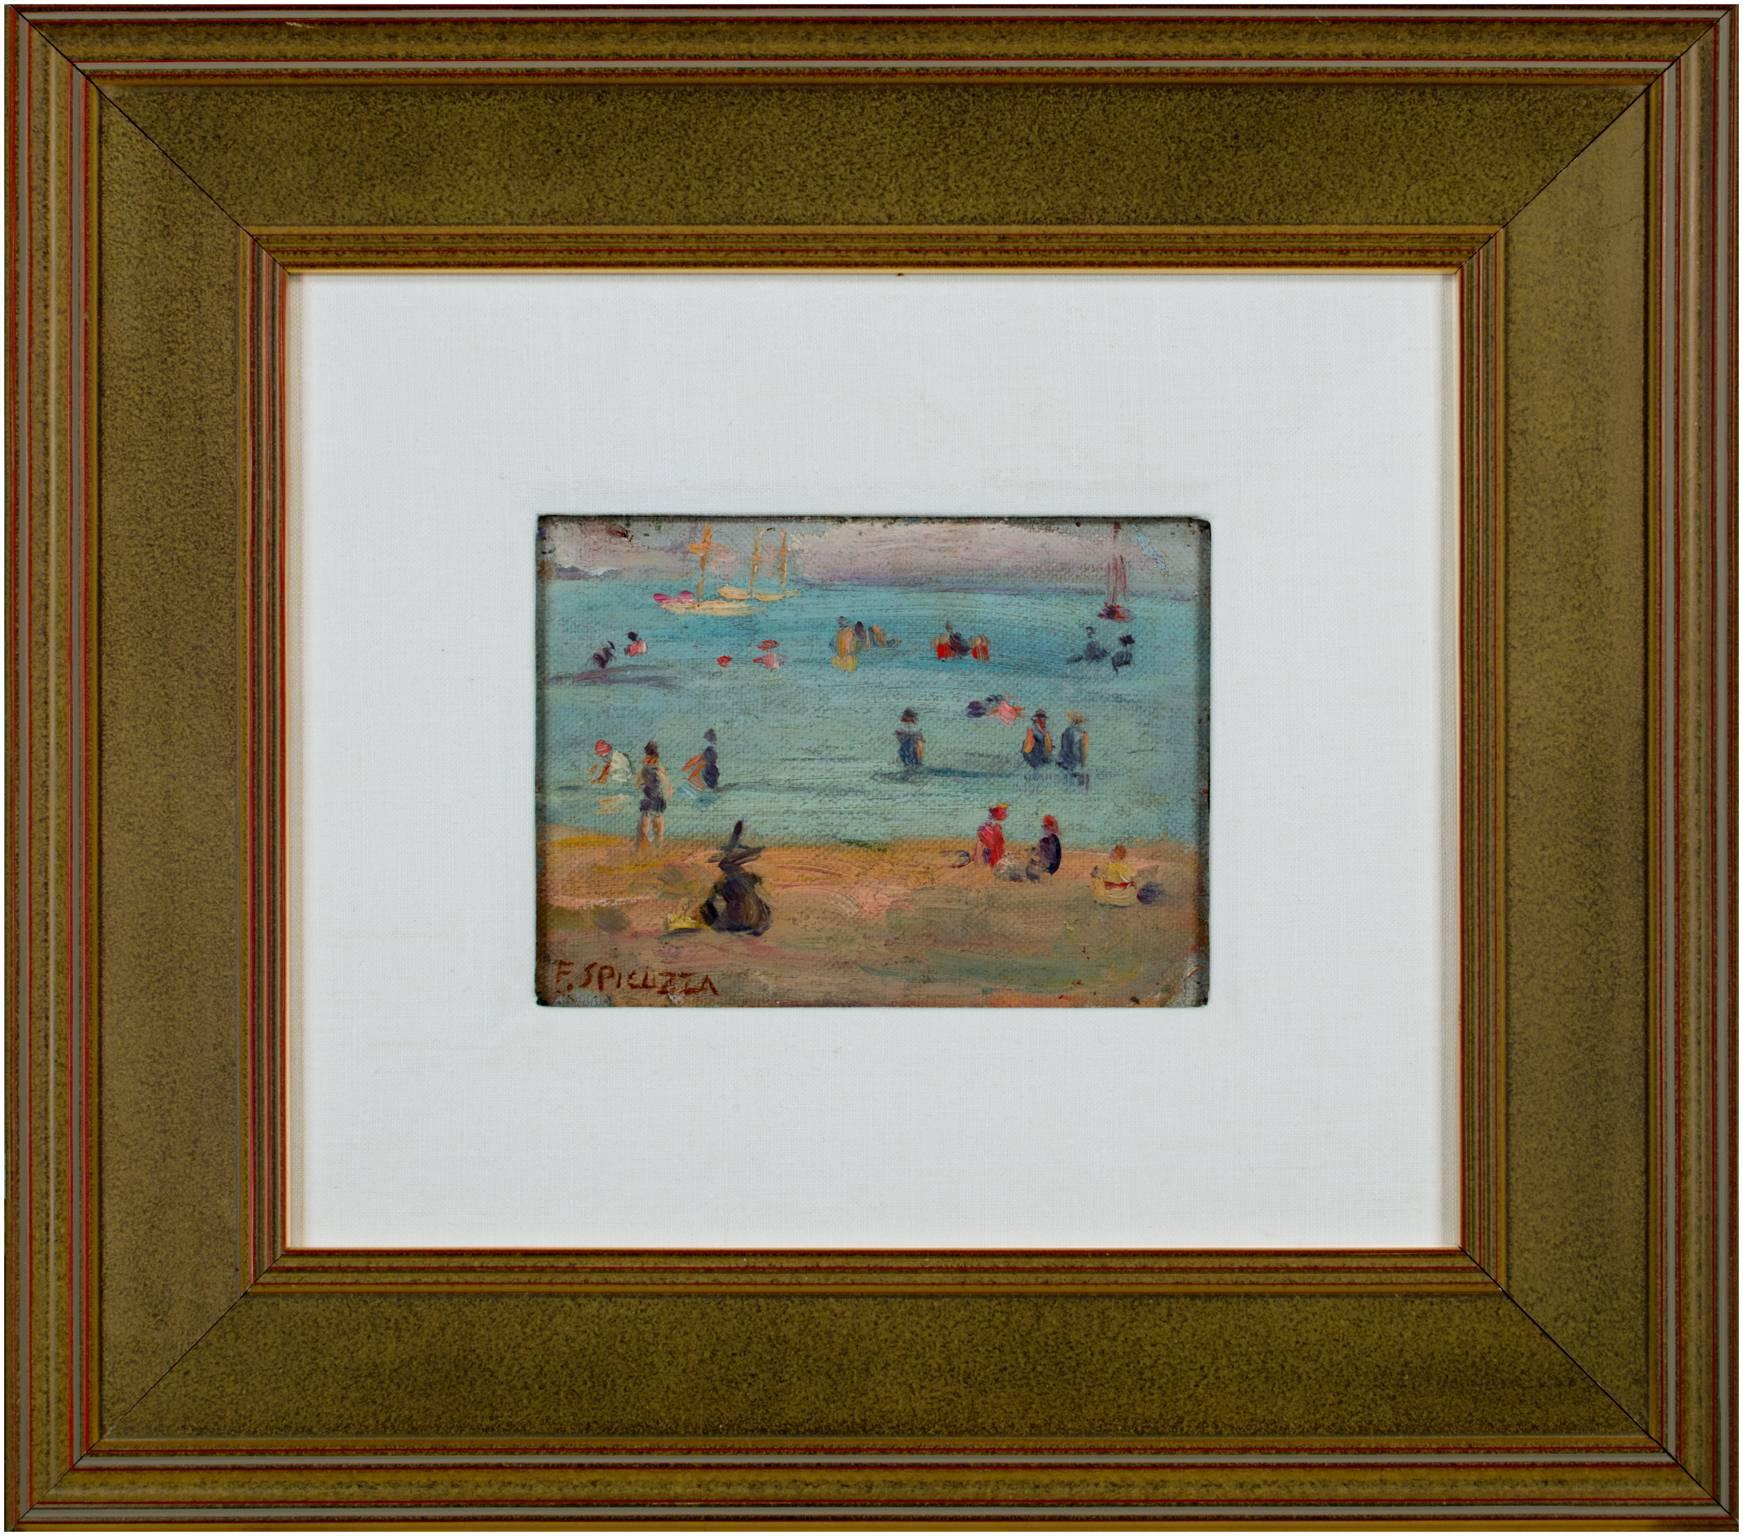 "Lake Michigan Beach Scene" ist ein Original-Ölgemälde von Francesco Spicuzza. Der Künstler malte diese Szene auf Leinwand und klebte sie dann auf ein Brett. Der Künstler hat das Werk unten links signiert. Dieses Gemälde zeigt eine Reihe von